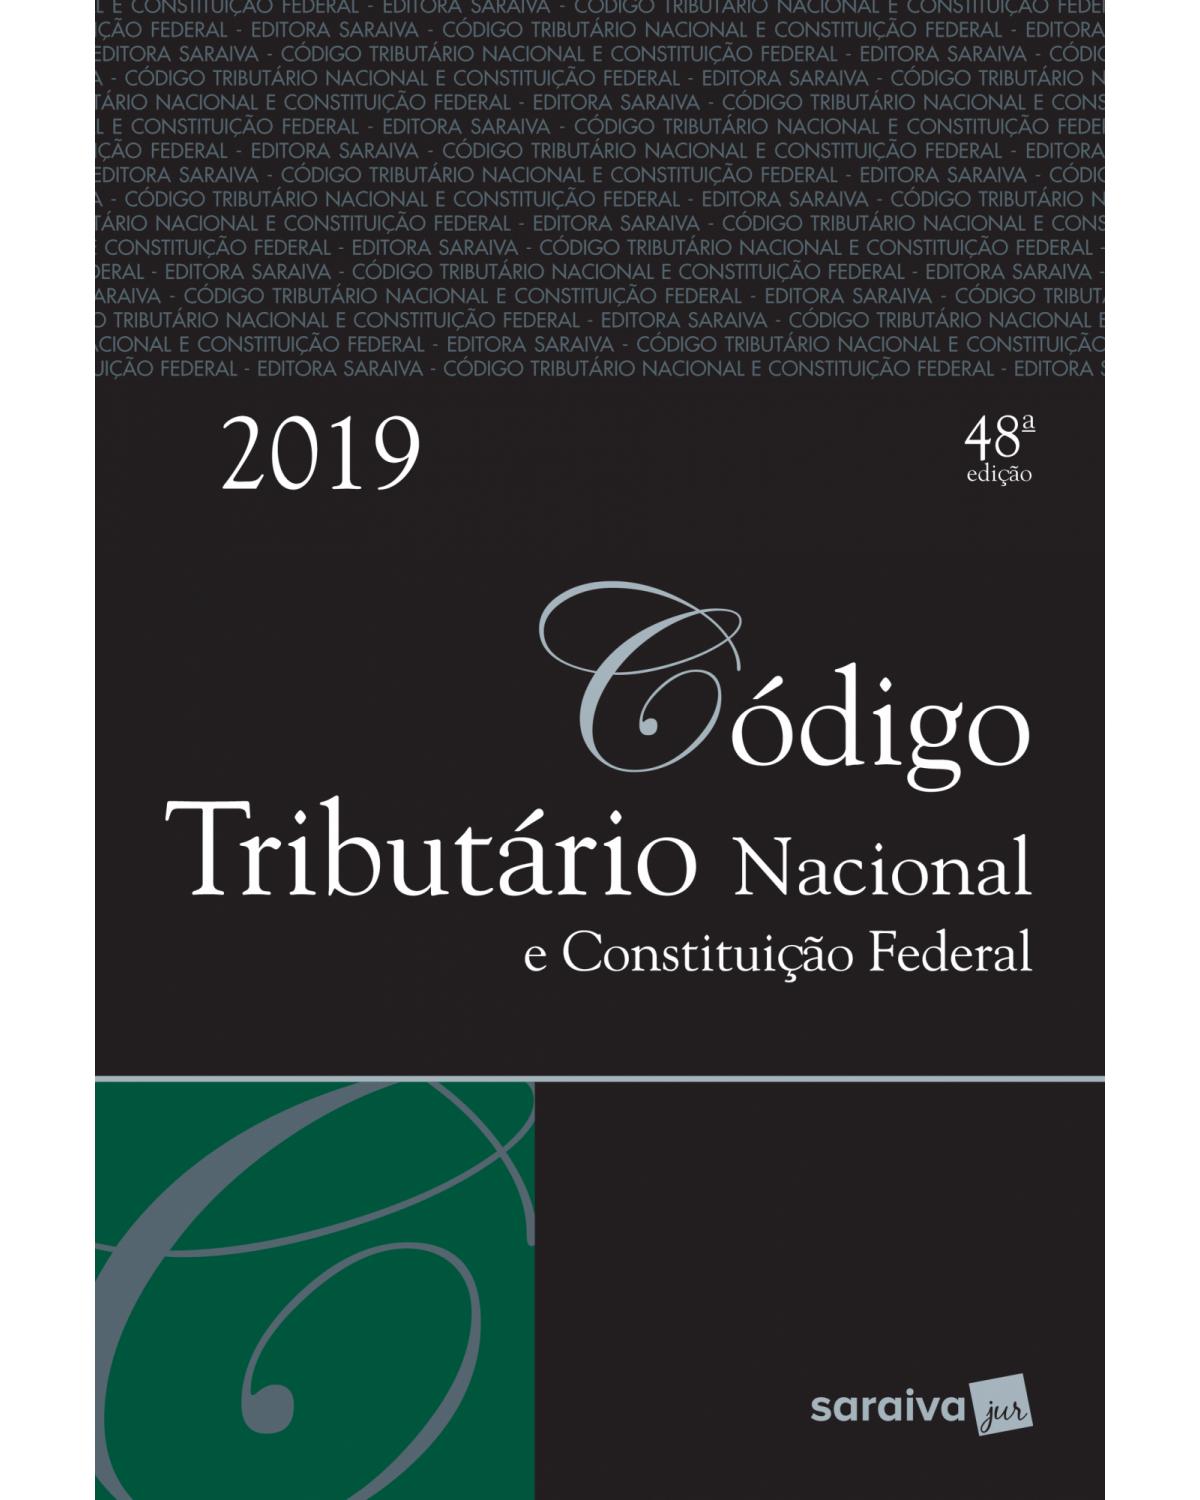 Código tributário nacional e Constituição Federal 2019 - 48ª Edição | 2019